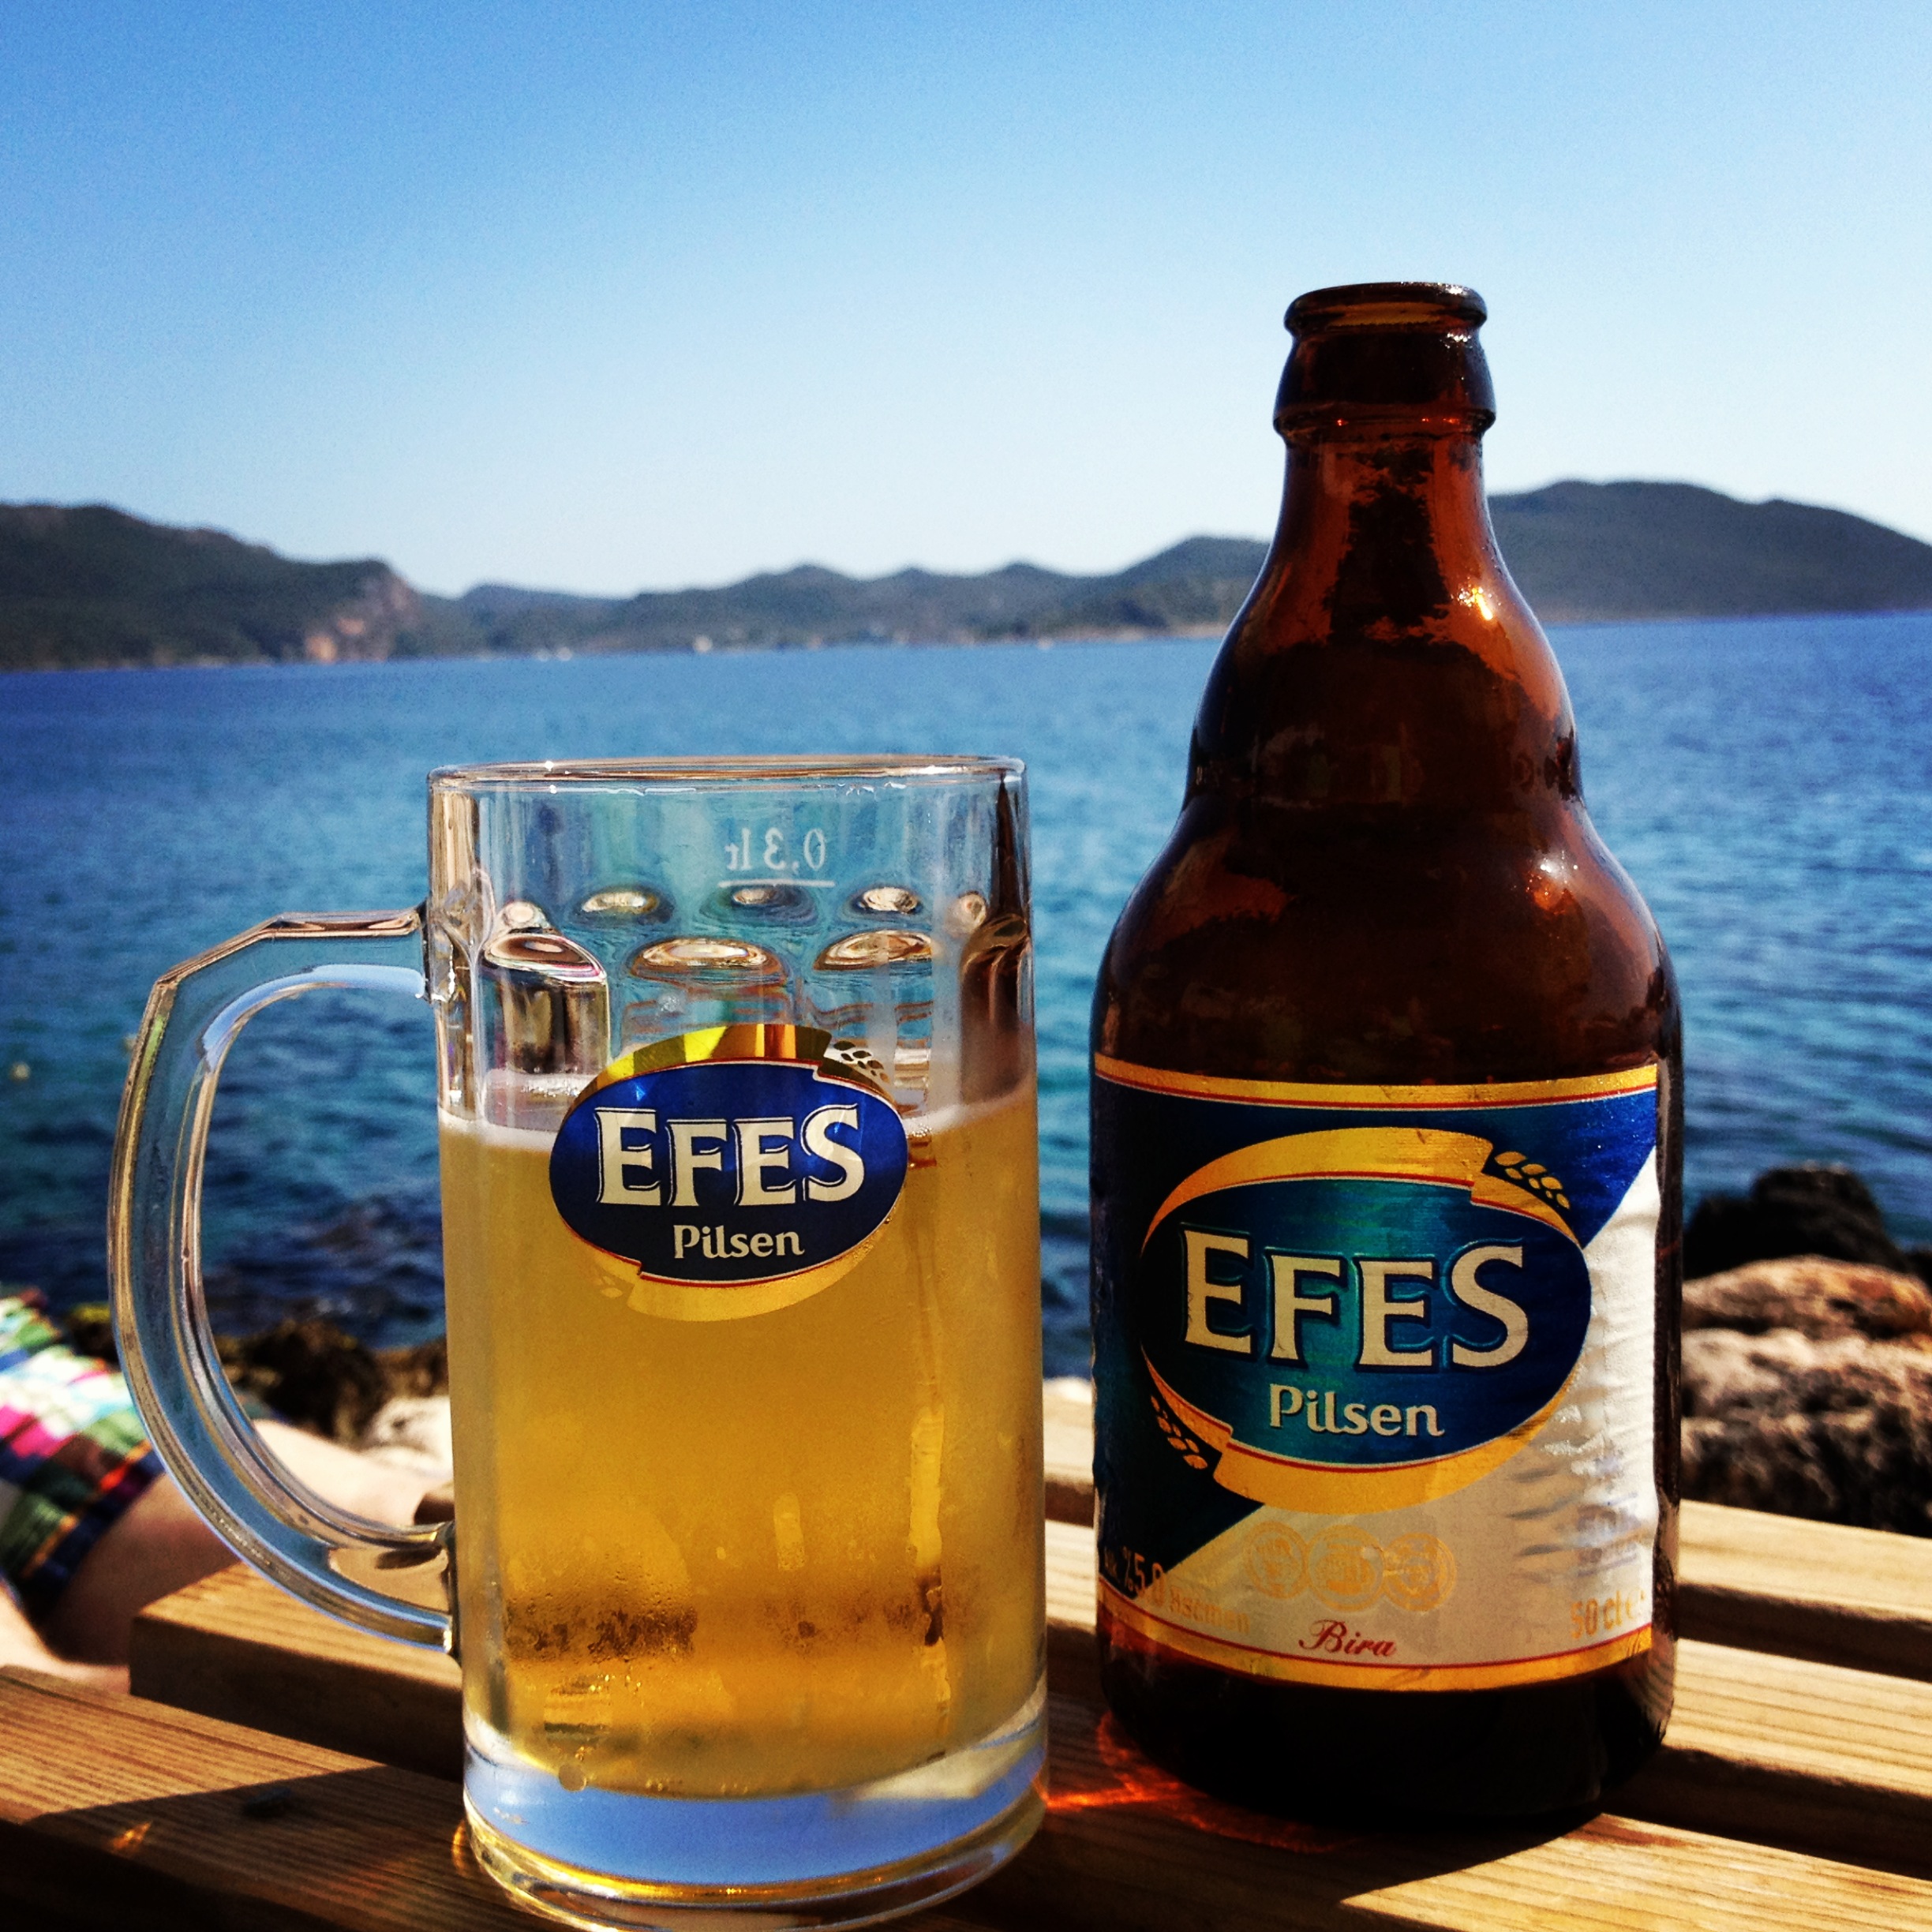 Efes Beer at the “Beach Club” in Kaş, Turkey 